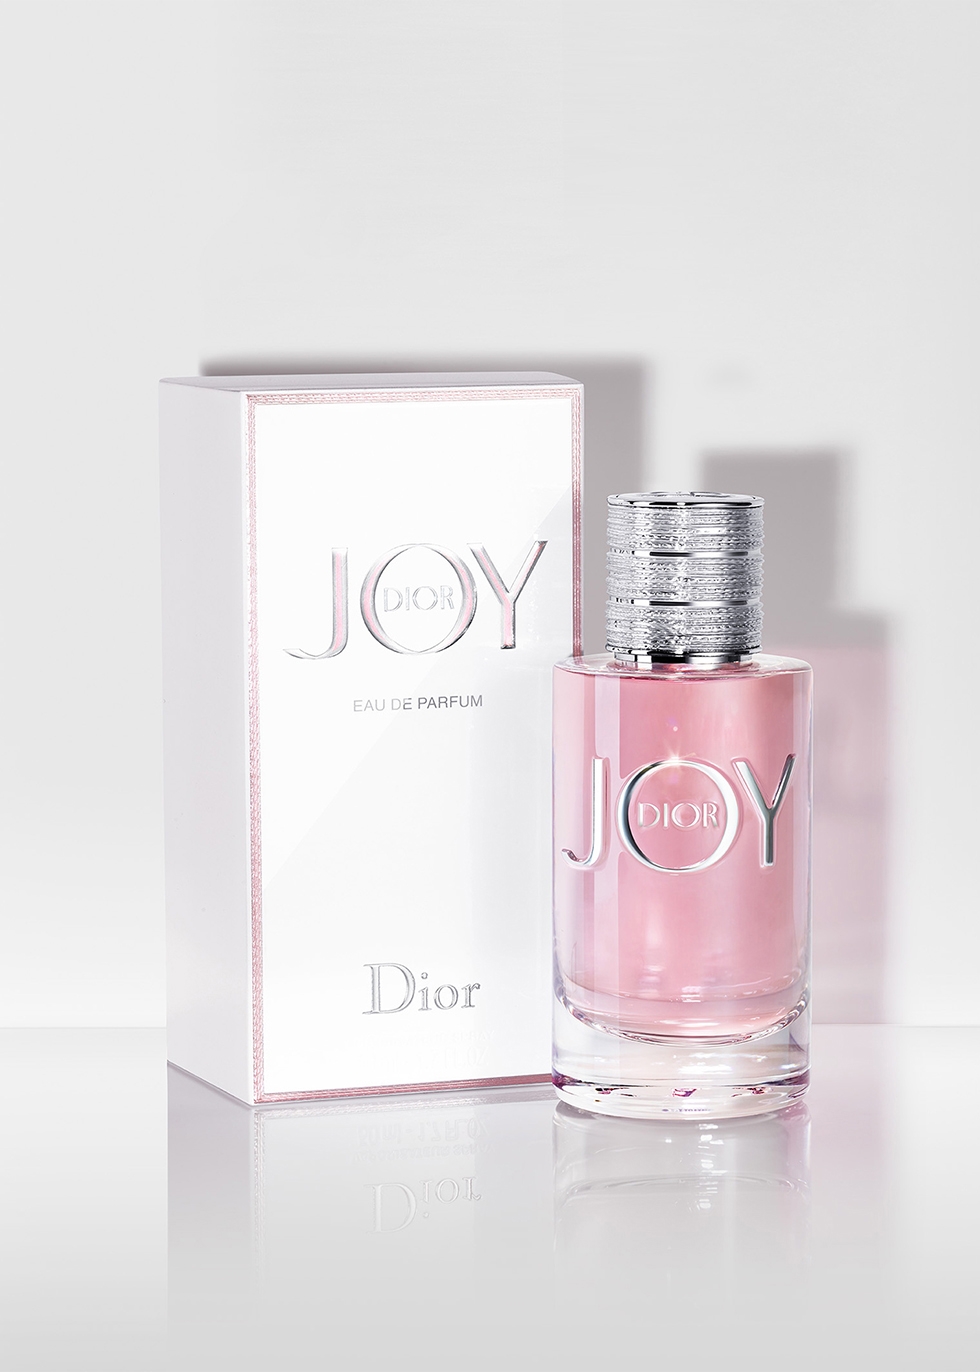 joy by dior eau de parfum 90ml